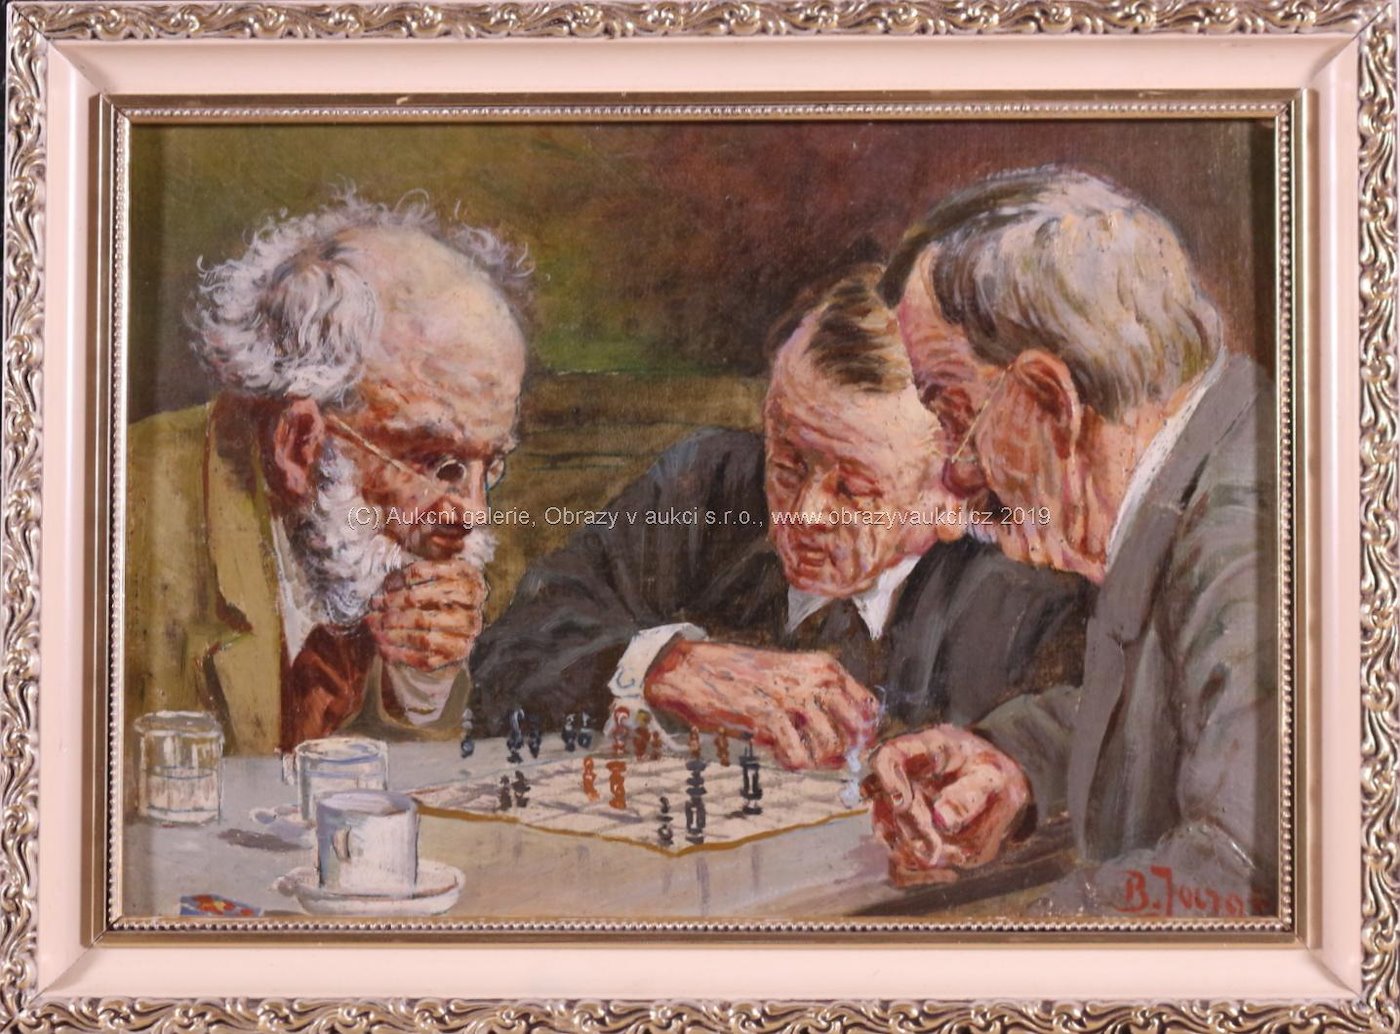 Bohumil Jaroš - Šachisté